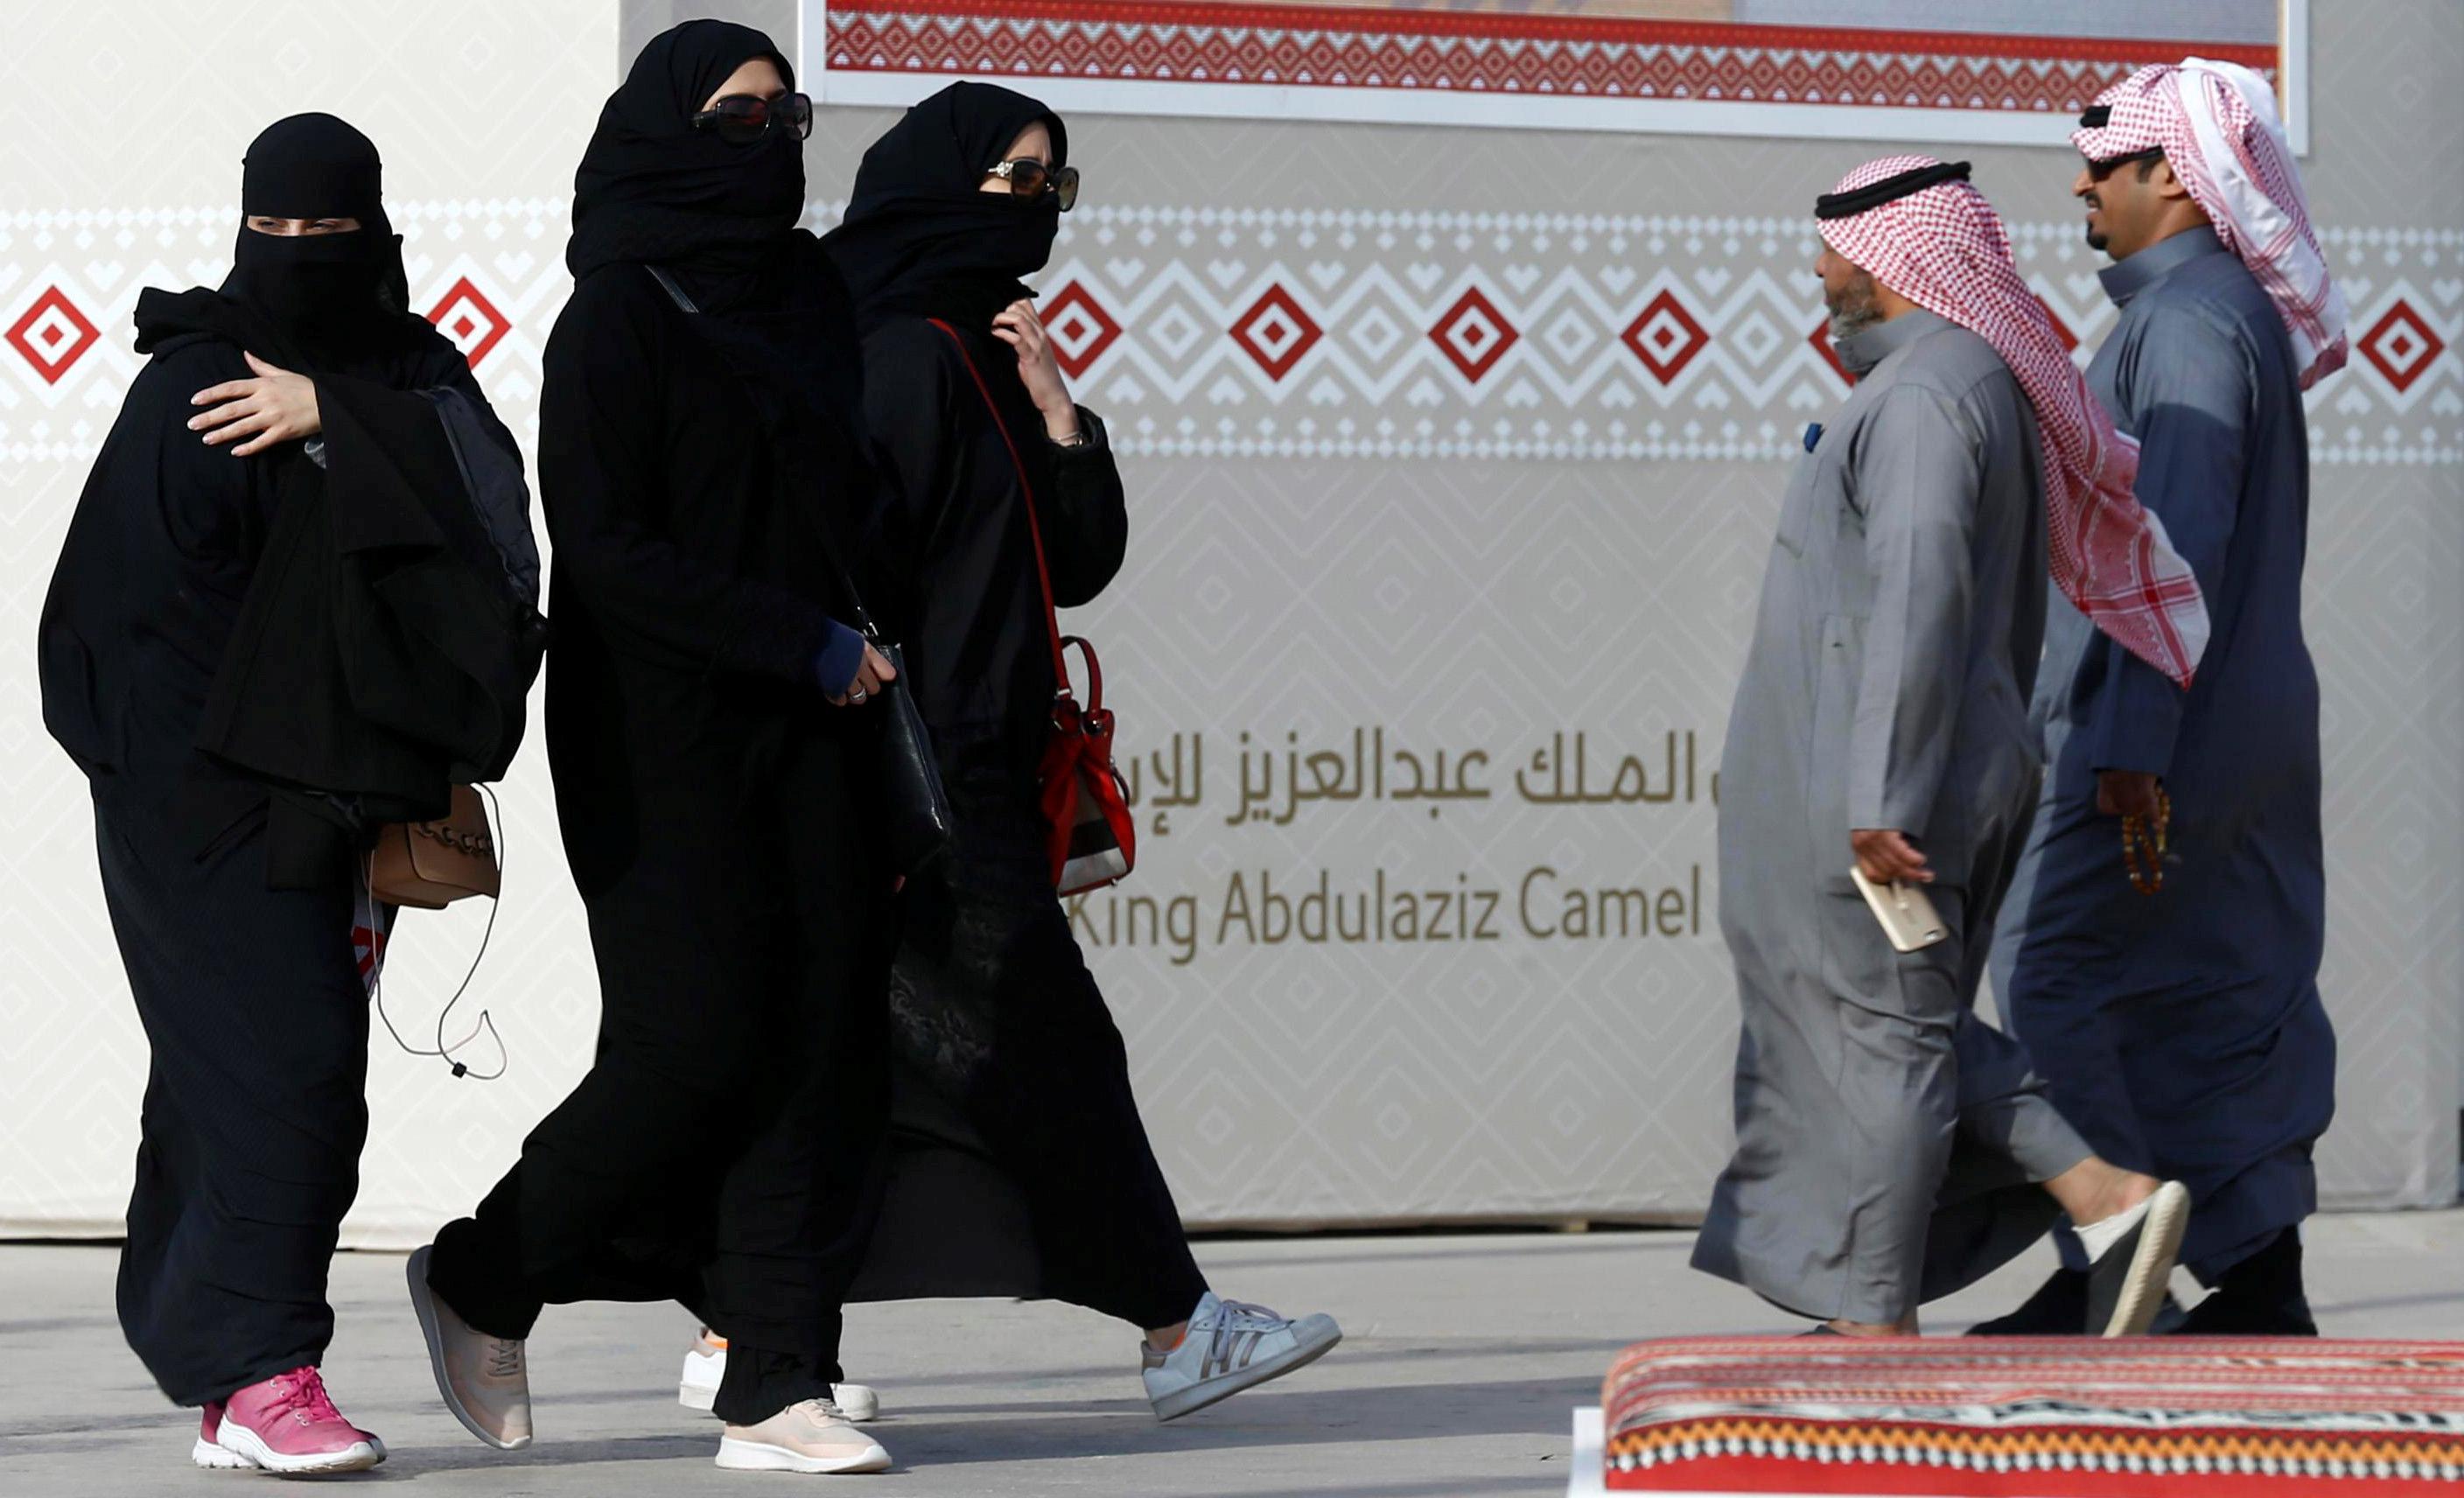 المرأة السعودية في عهد الملك سلمان لم تحصل على حق التصويت في الانتخابات البلدية